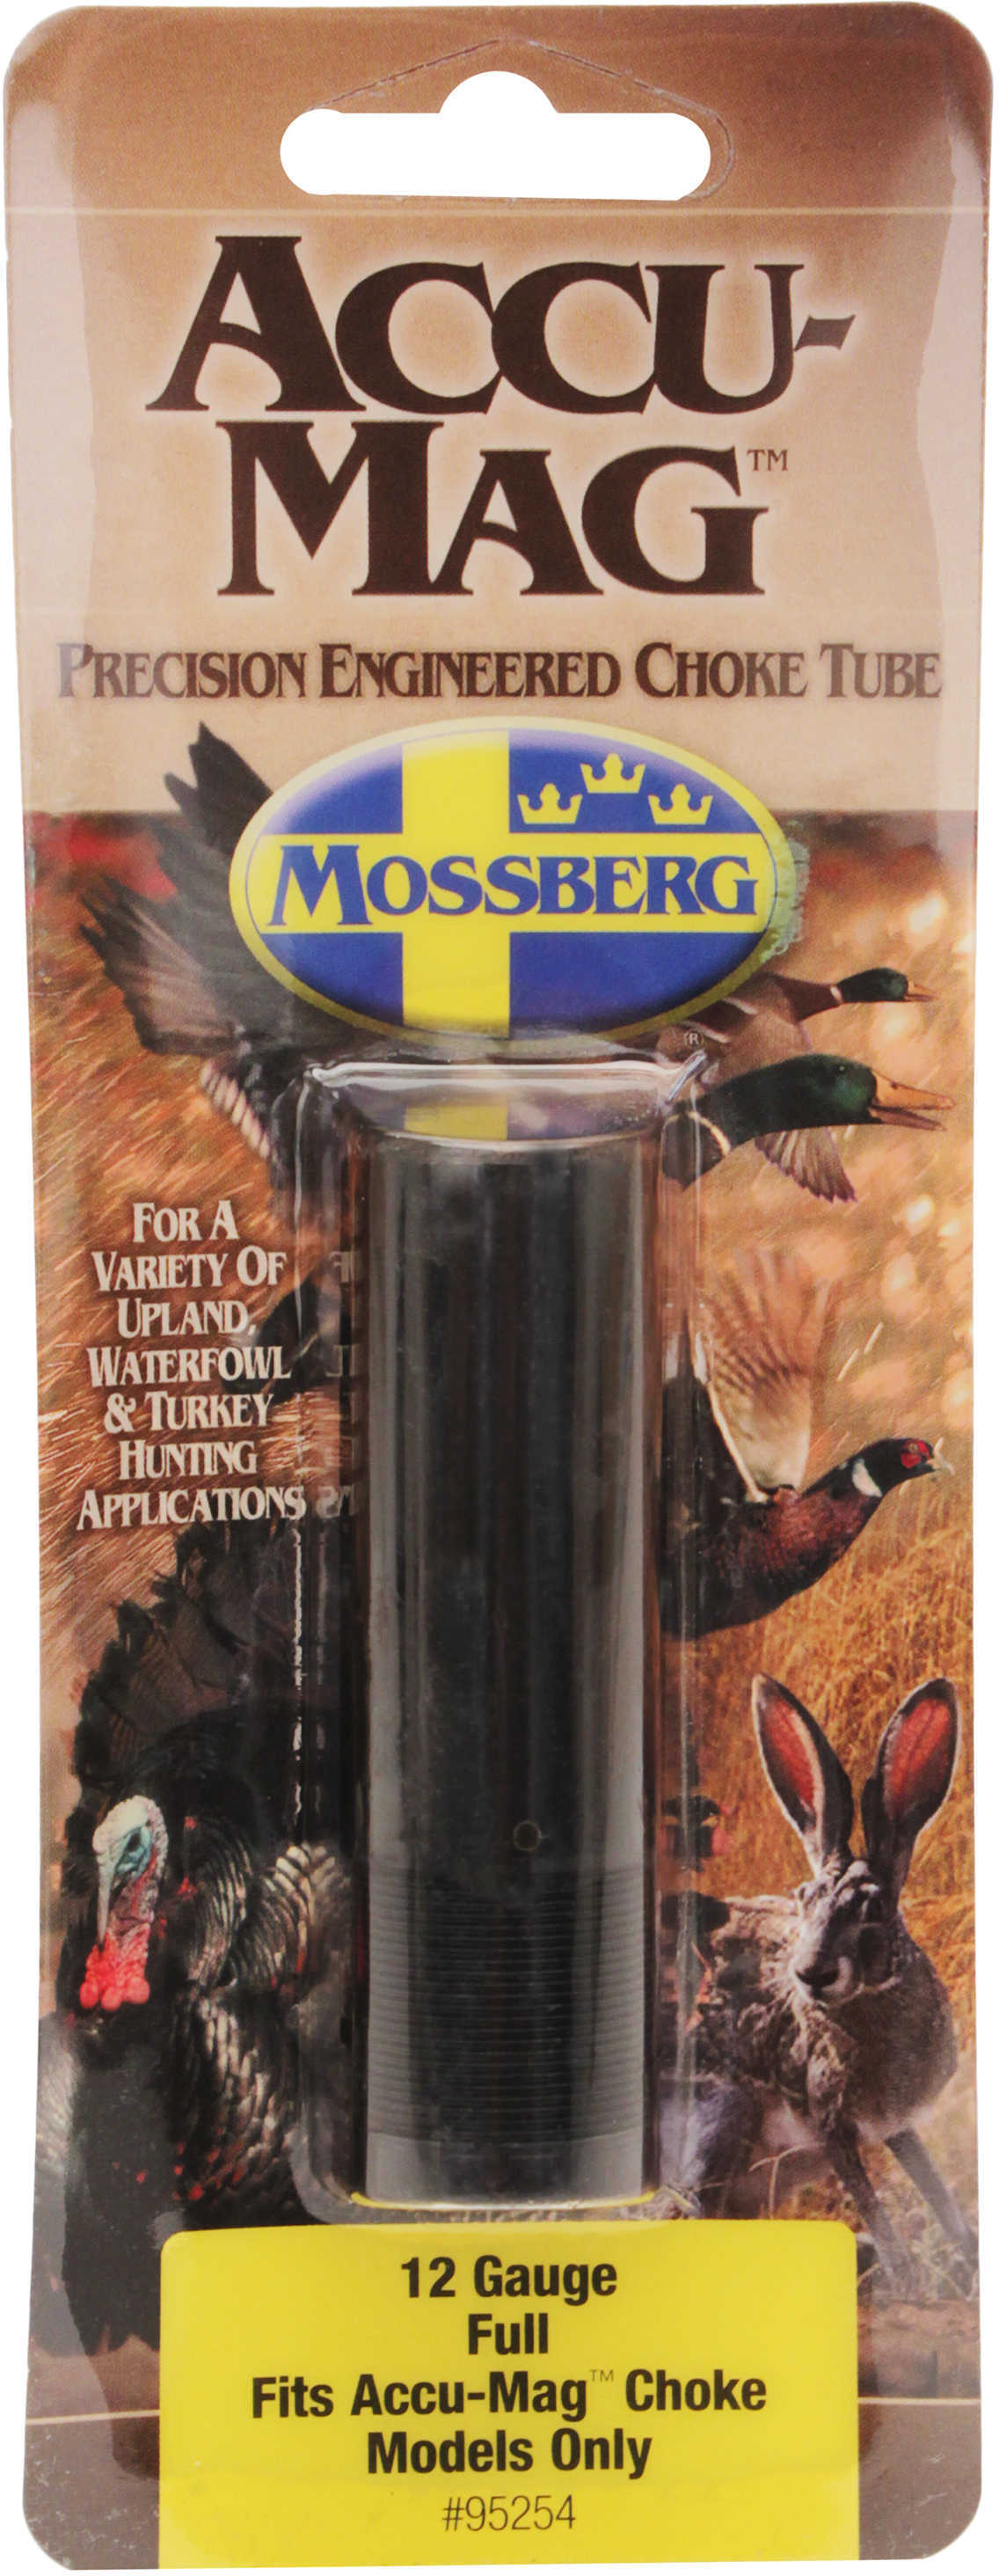 Mossberg Accu-Mag Choke Tube 12 Gauge, Full Md: 95254